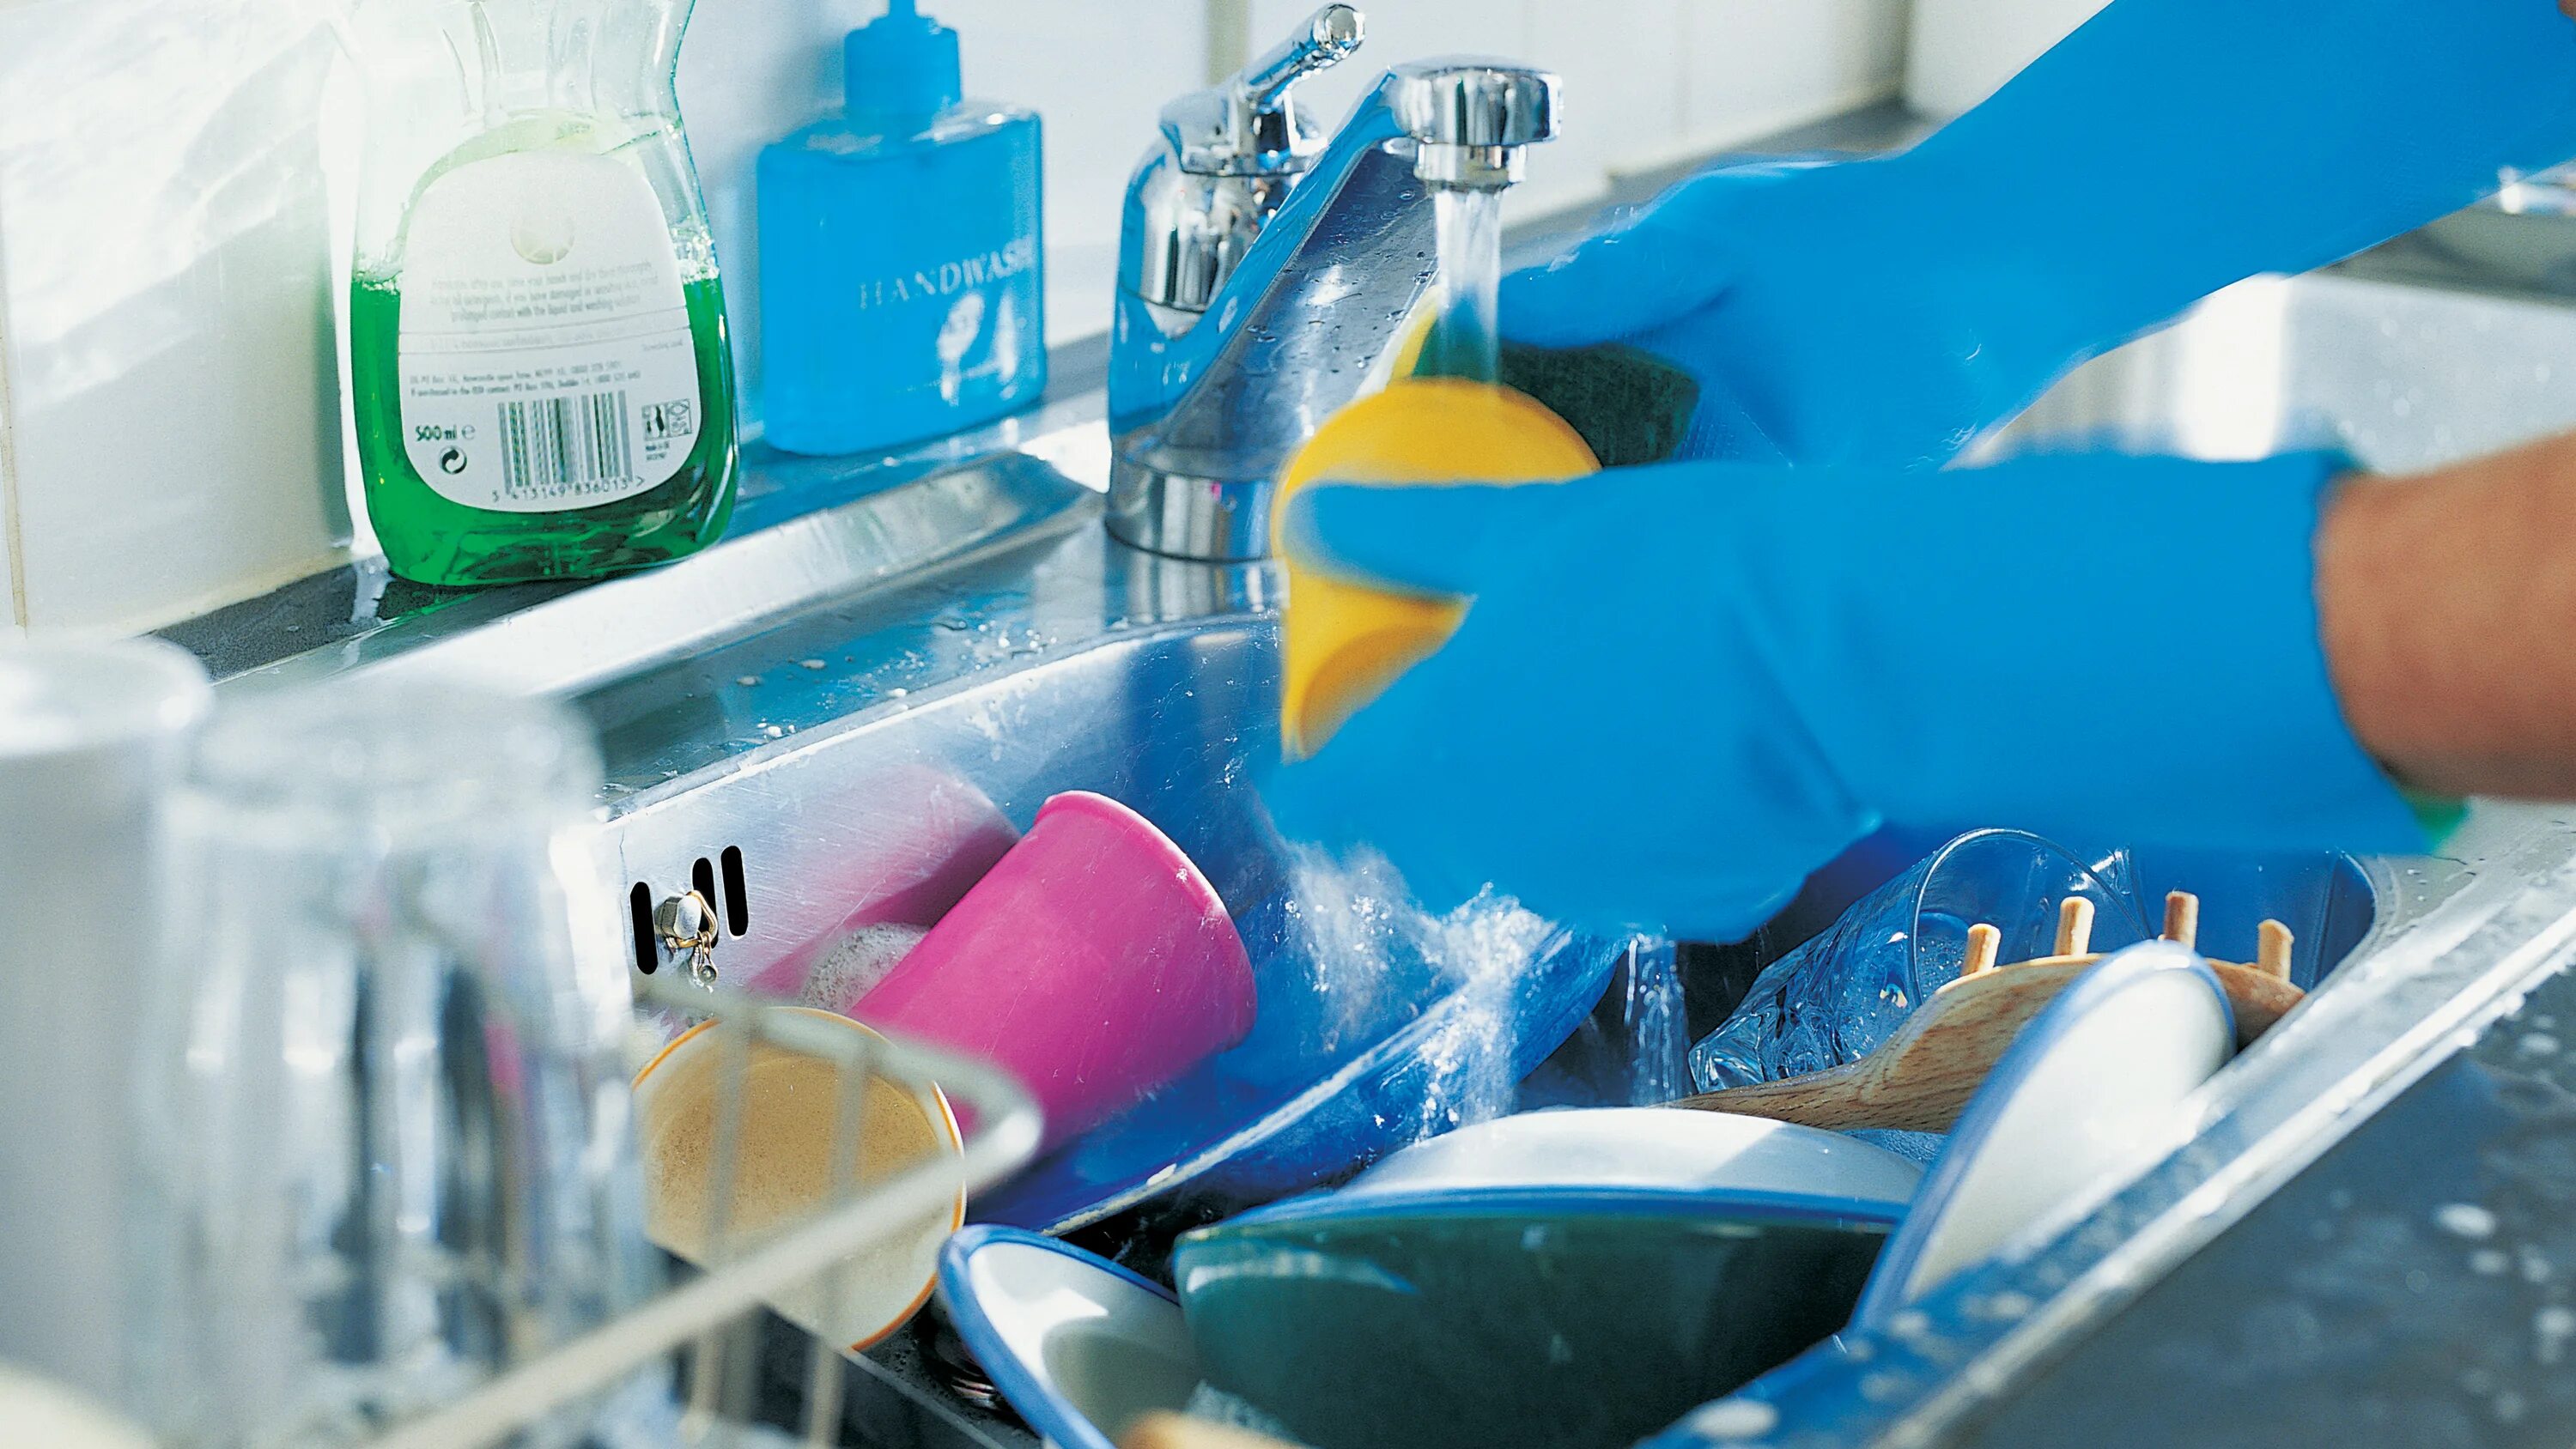 Мытье посуды. Мойка посуды. Мыть посуду картинка. Washing dishes. Стоит мытья посуды